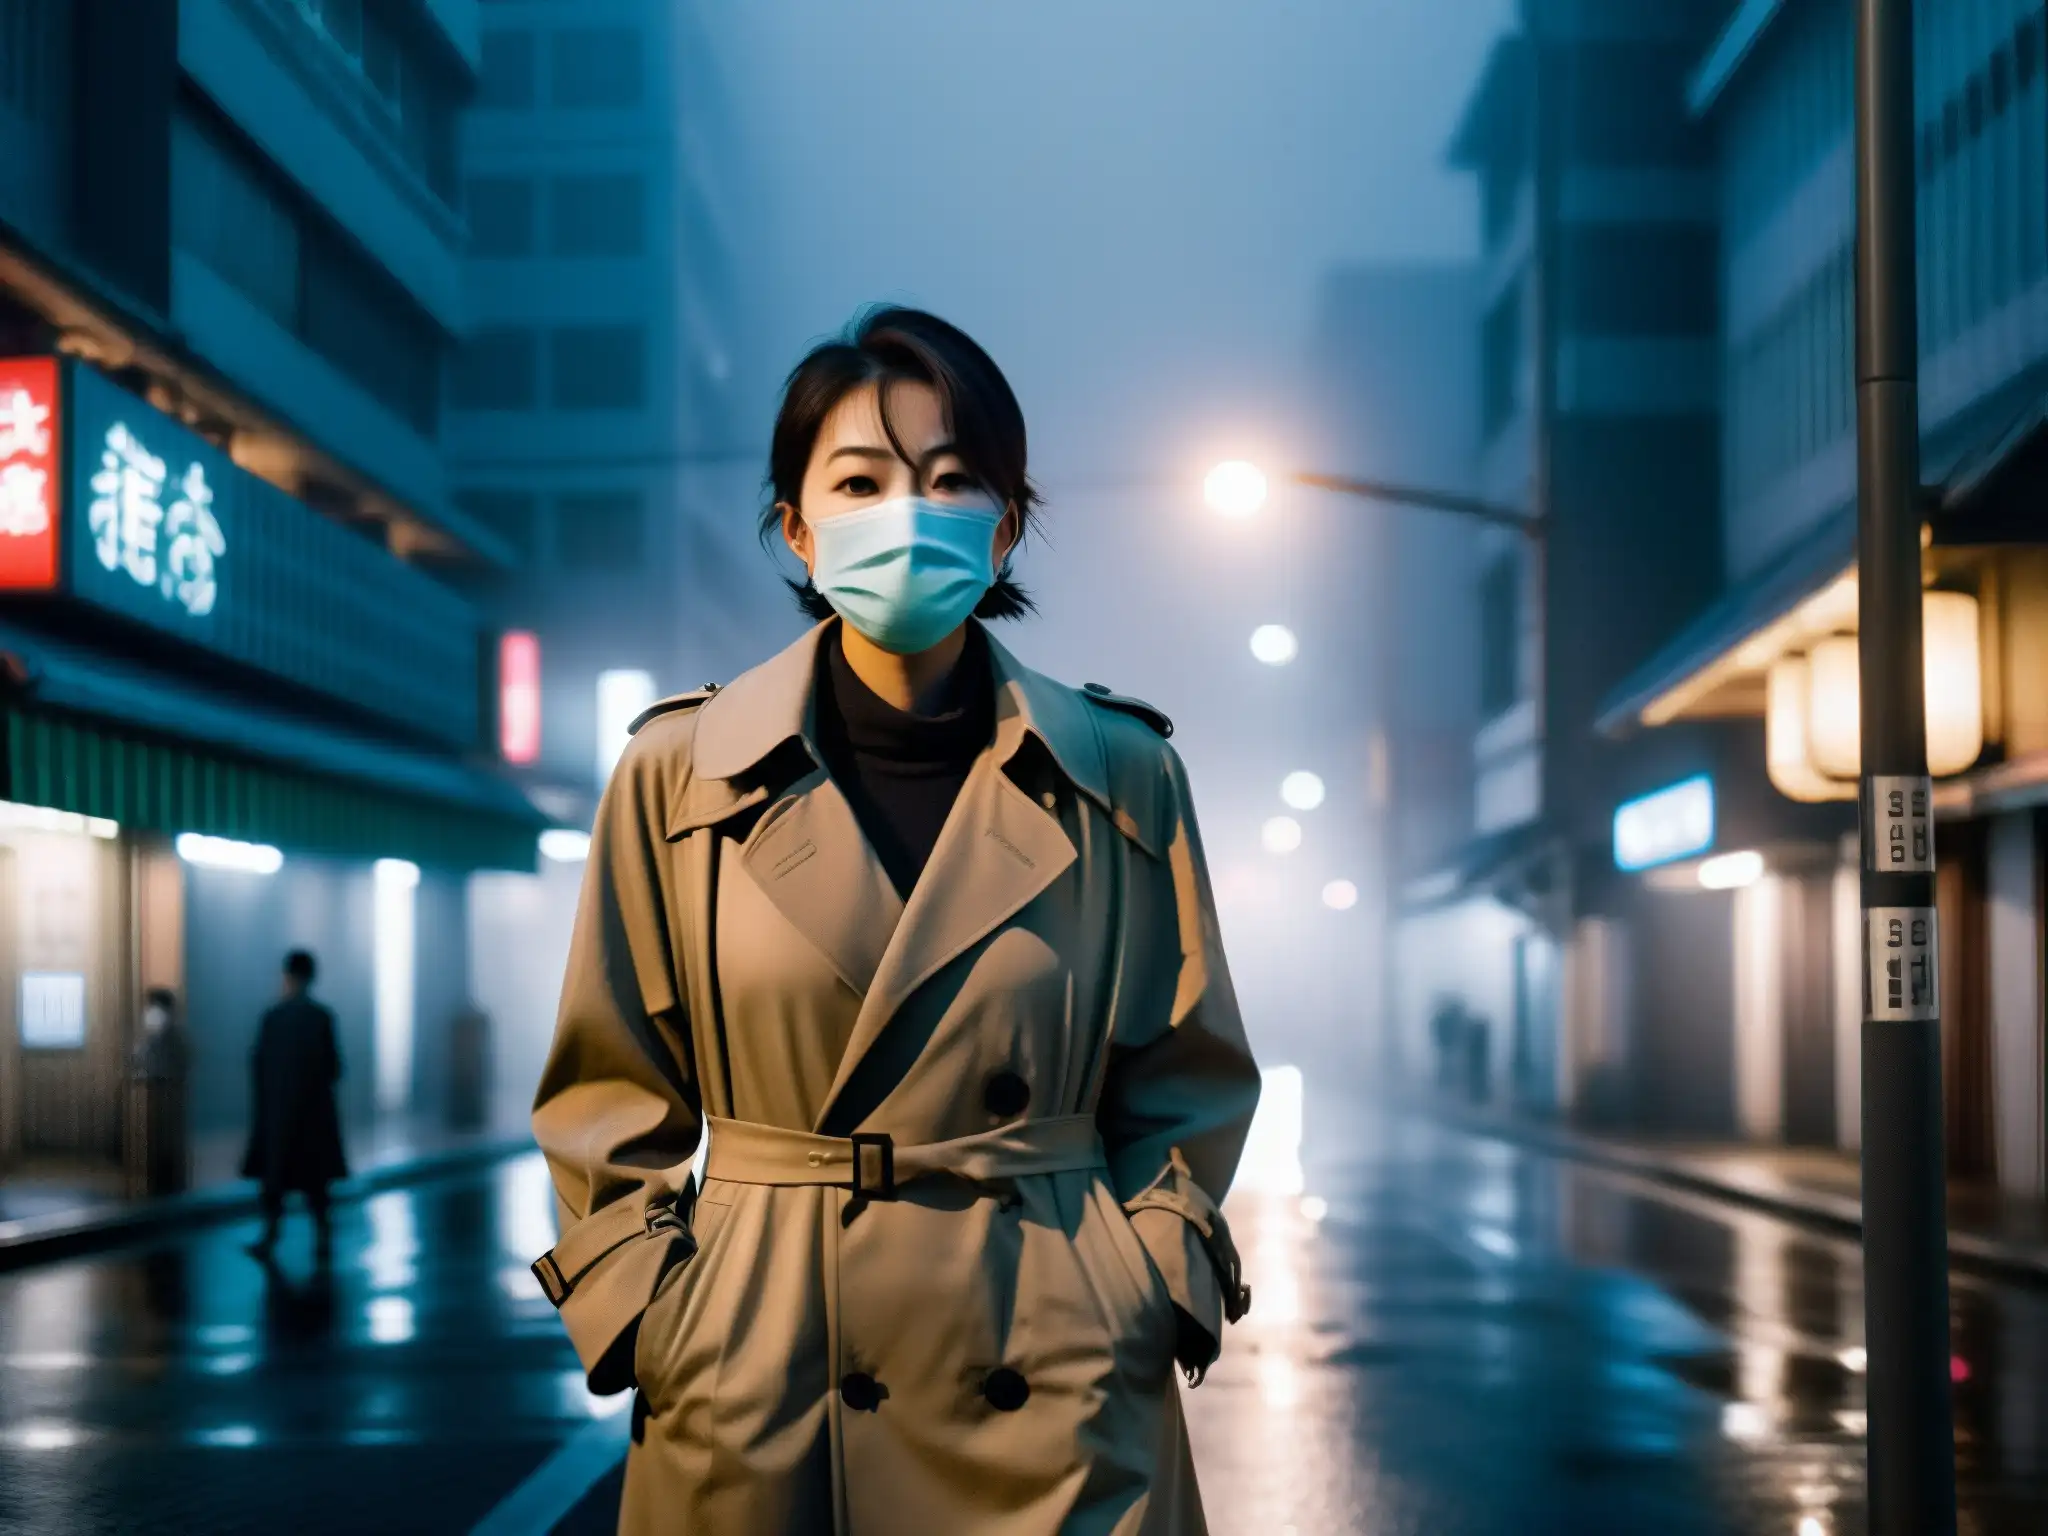 Una figura misteriosa con mascarilla y abrigo bajo una farola en las solitarias calles de Japón de noche, evocando el origen y auge de Kuchisake Onna